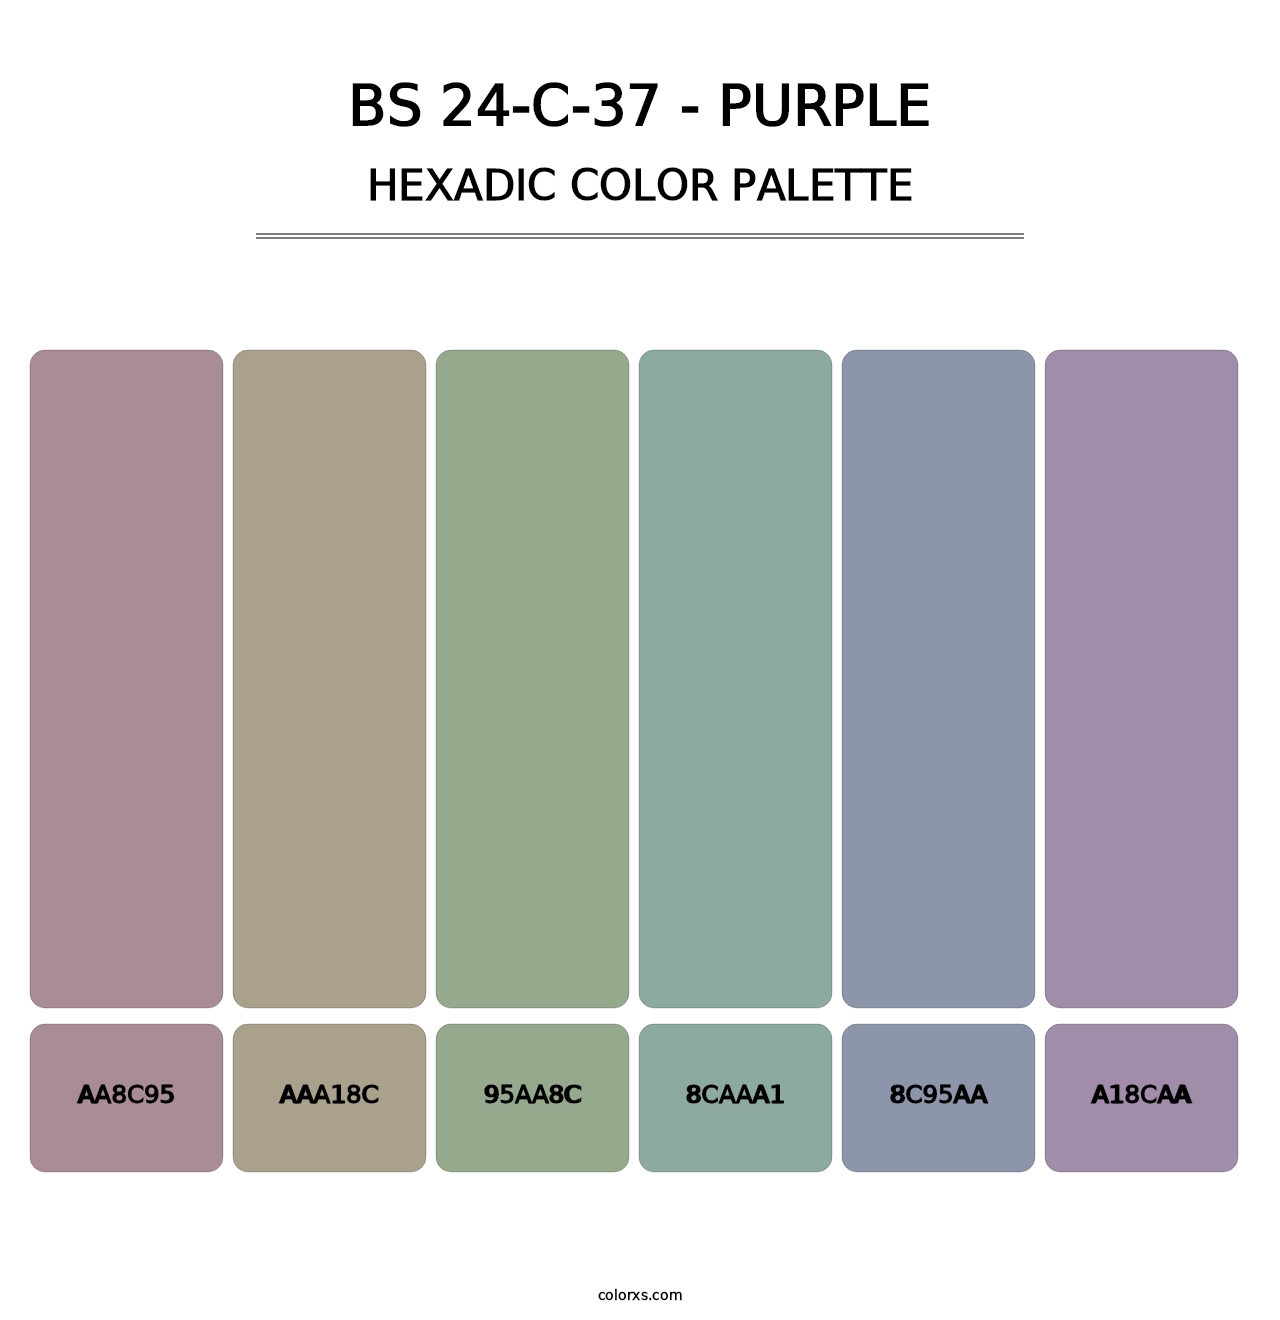 BS 24-C-37 - Purple - Hexadic Color Palette